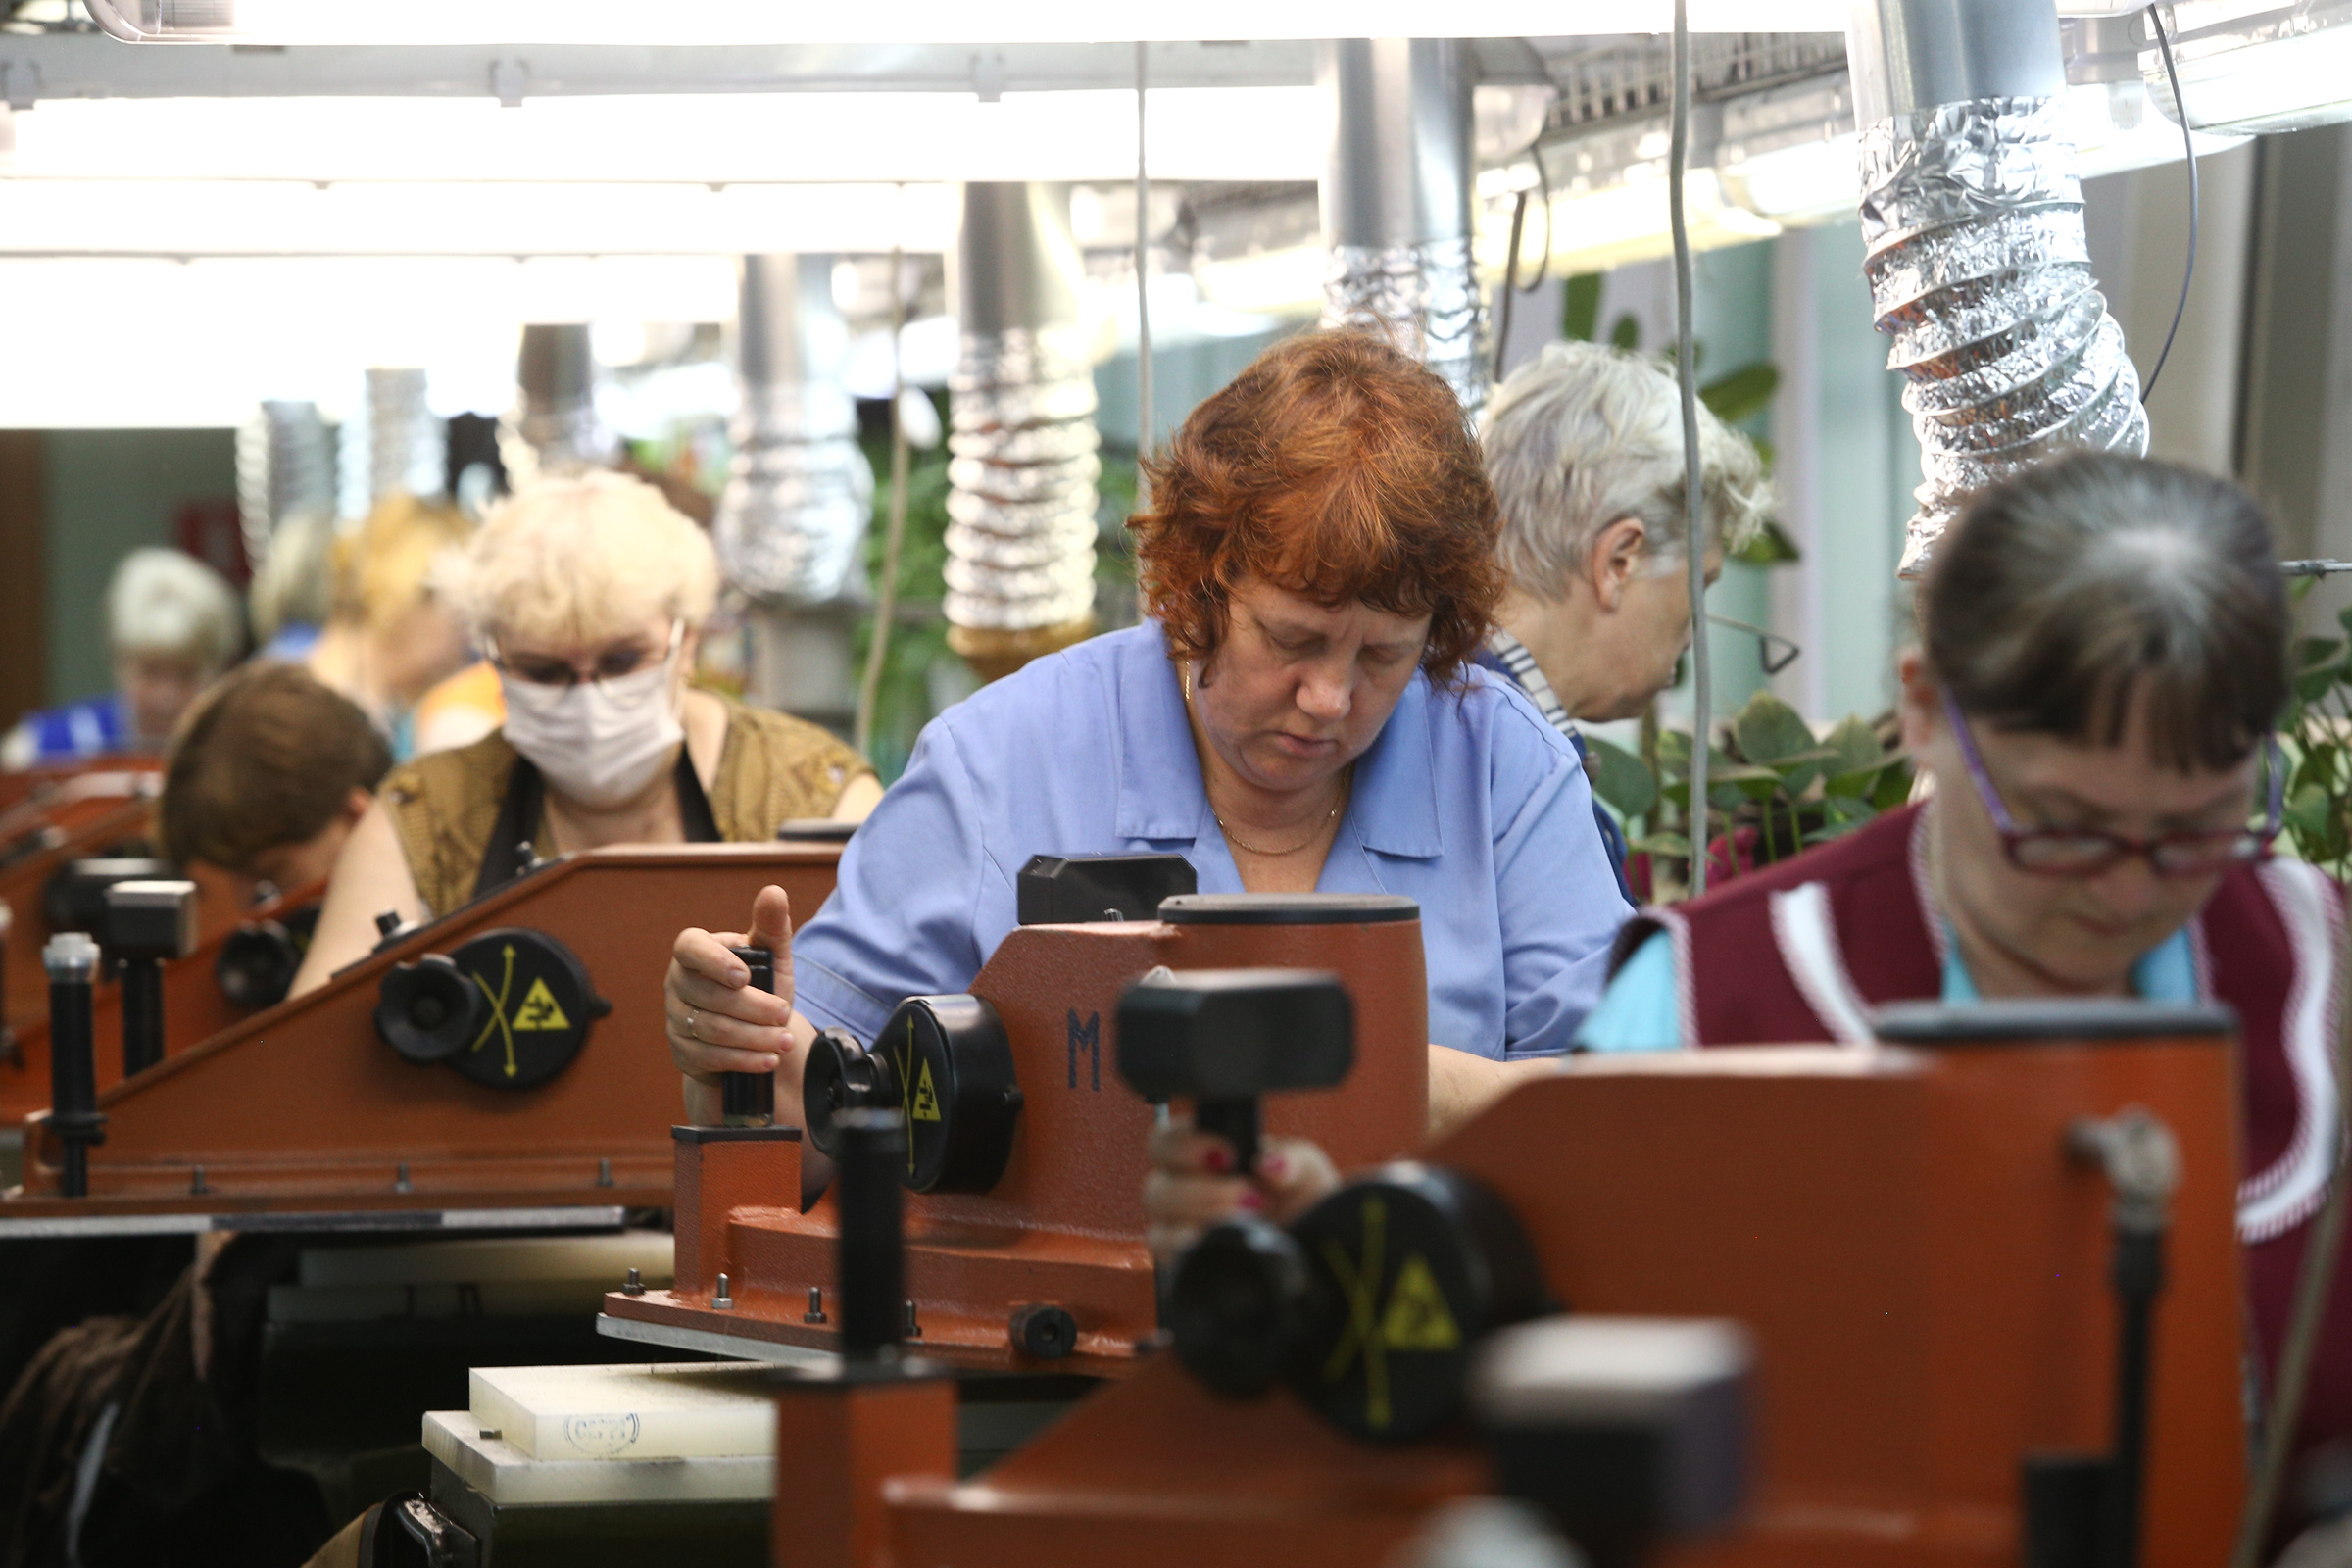 Пенсионеры за работой на обувной фабрике. Фото © ТАСС / Ведомости / Андрей Гордеев